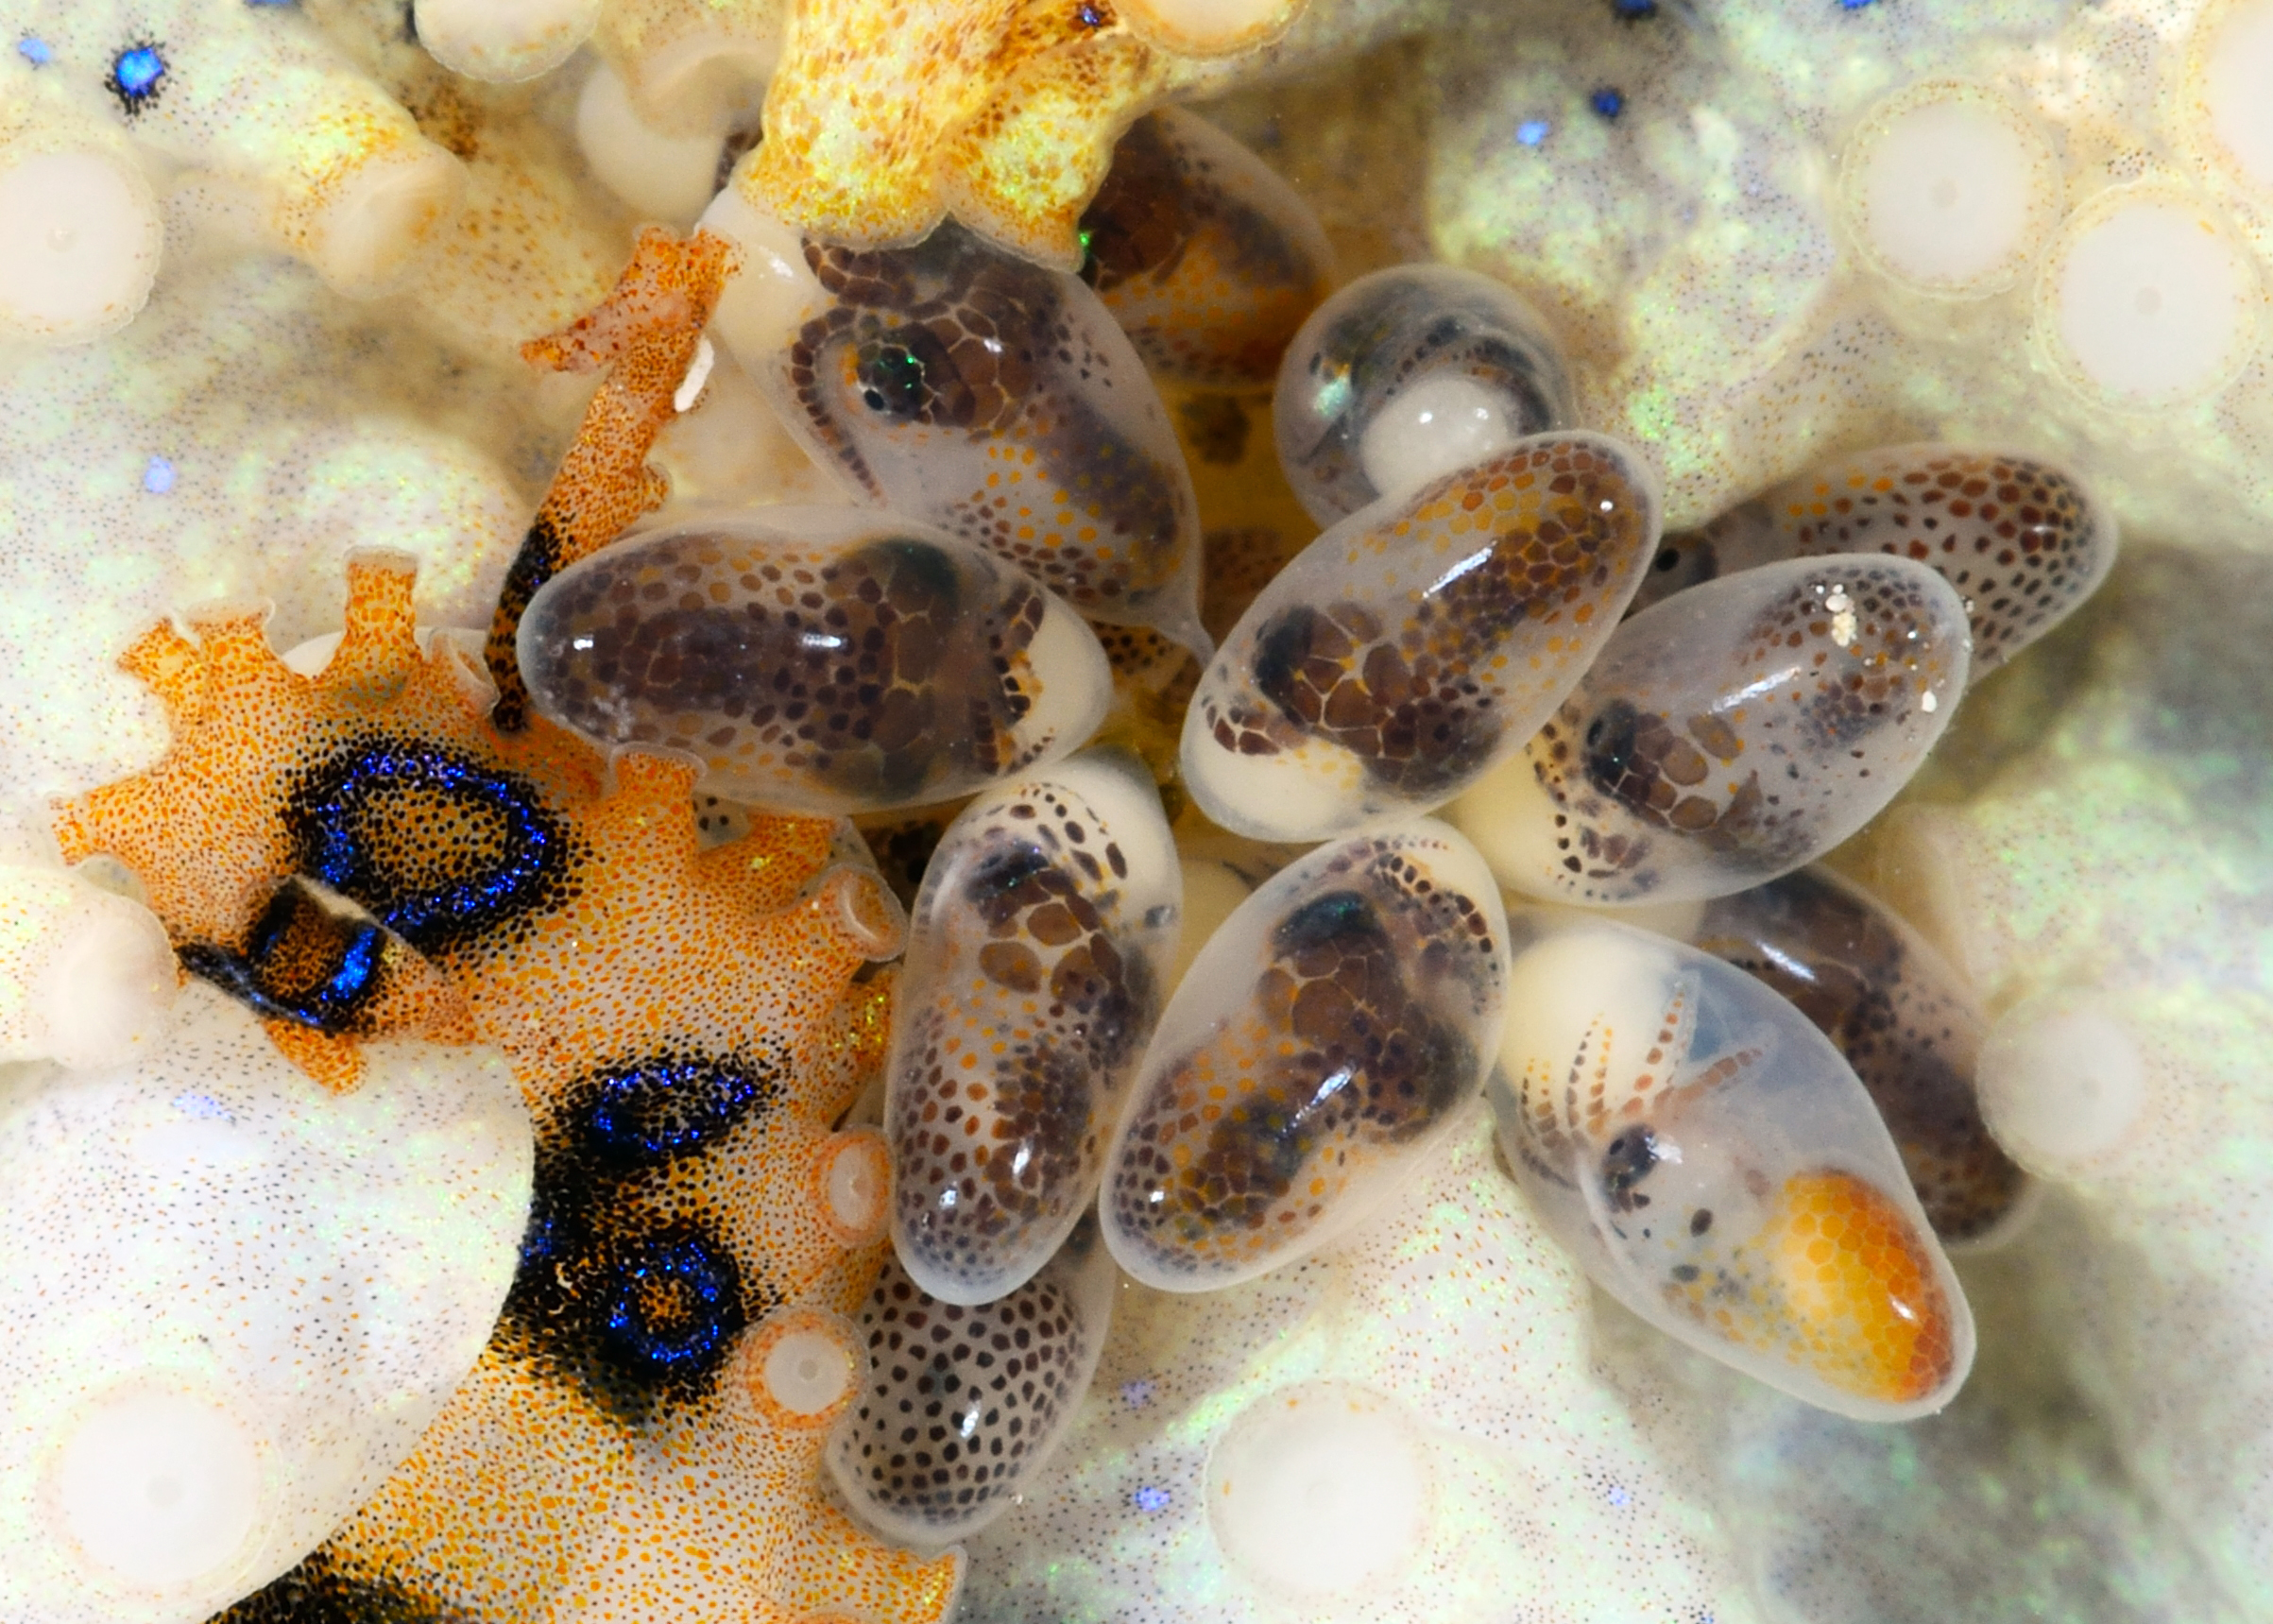 H lunulata eggs - dark chromatophores